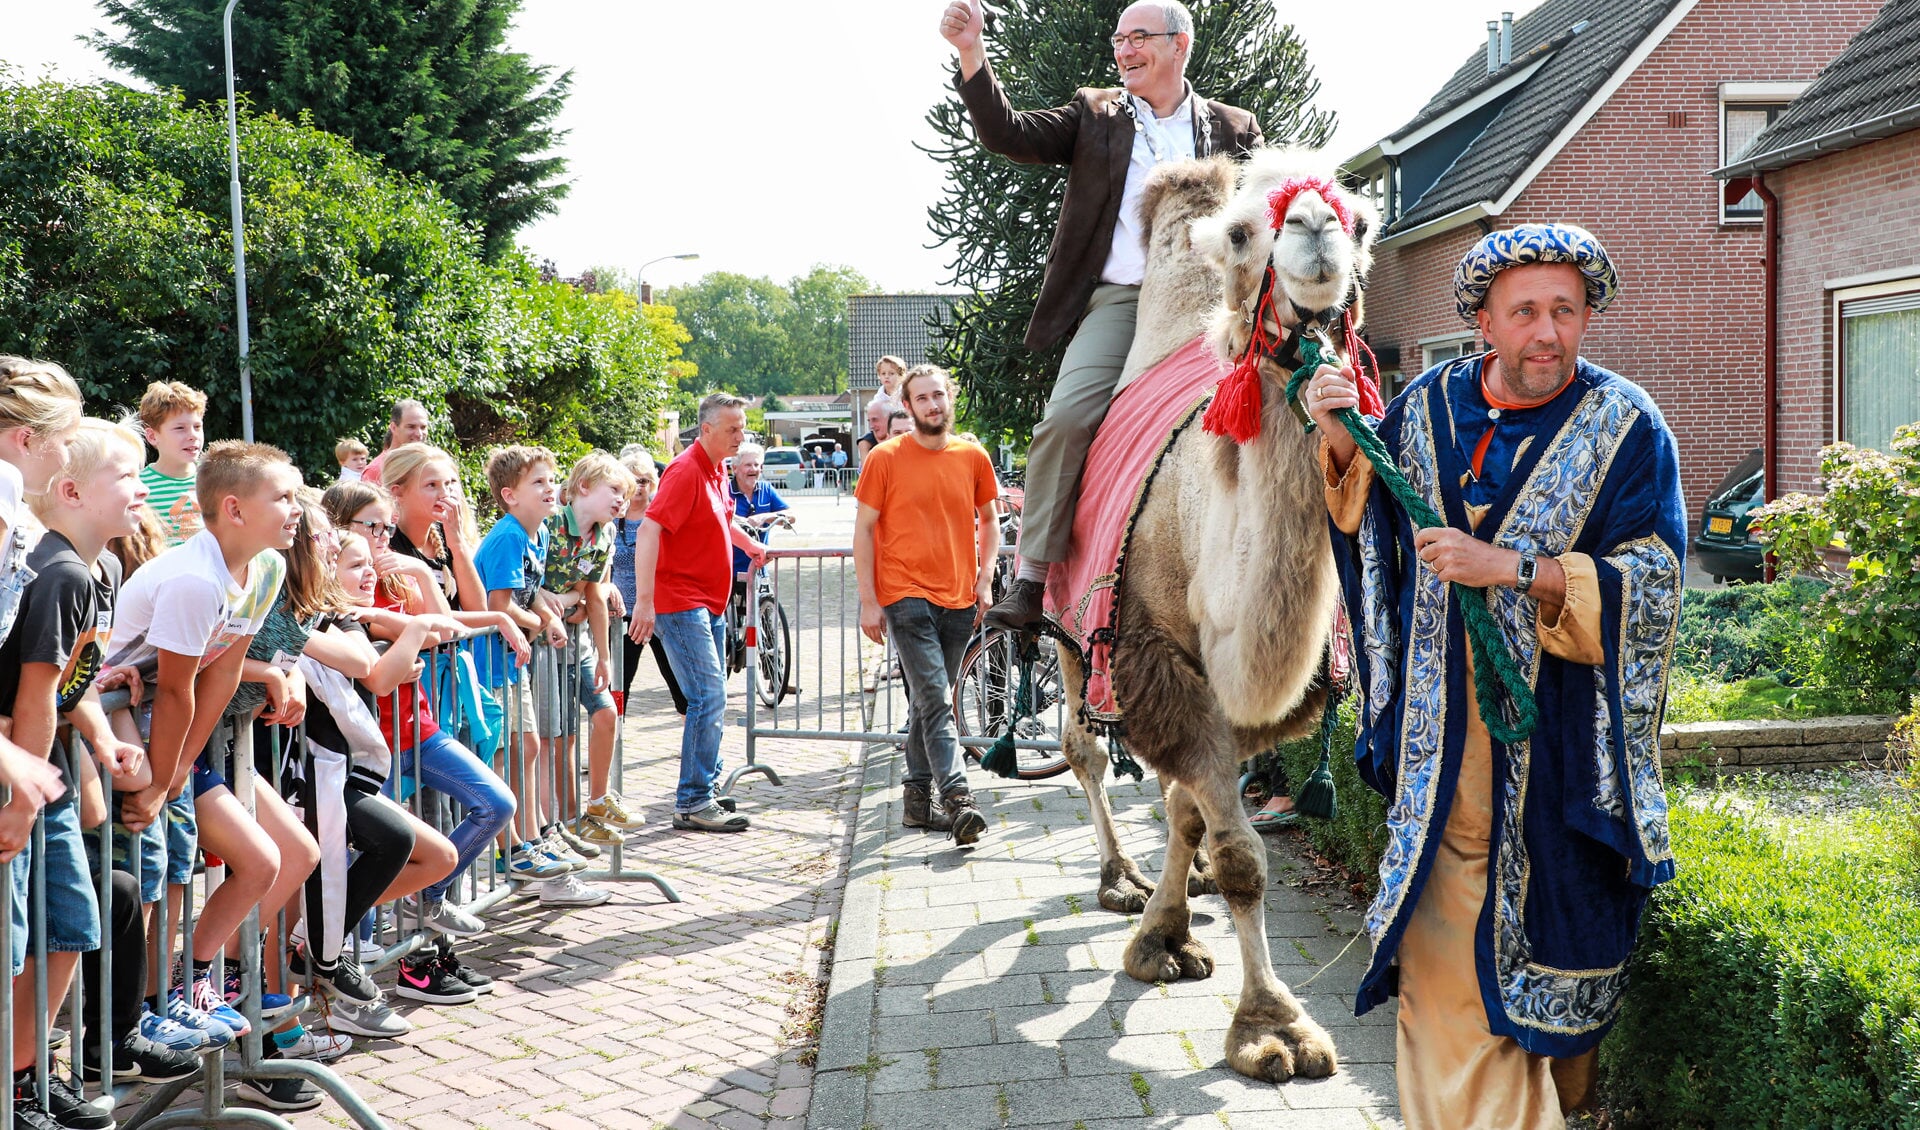 Burgemeester opent Kindervakantieweek Hedel op kameel